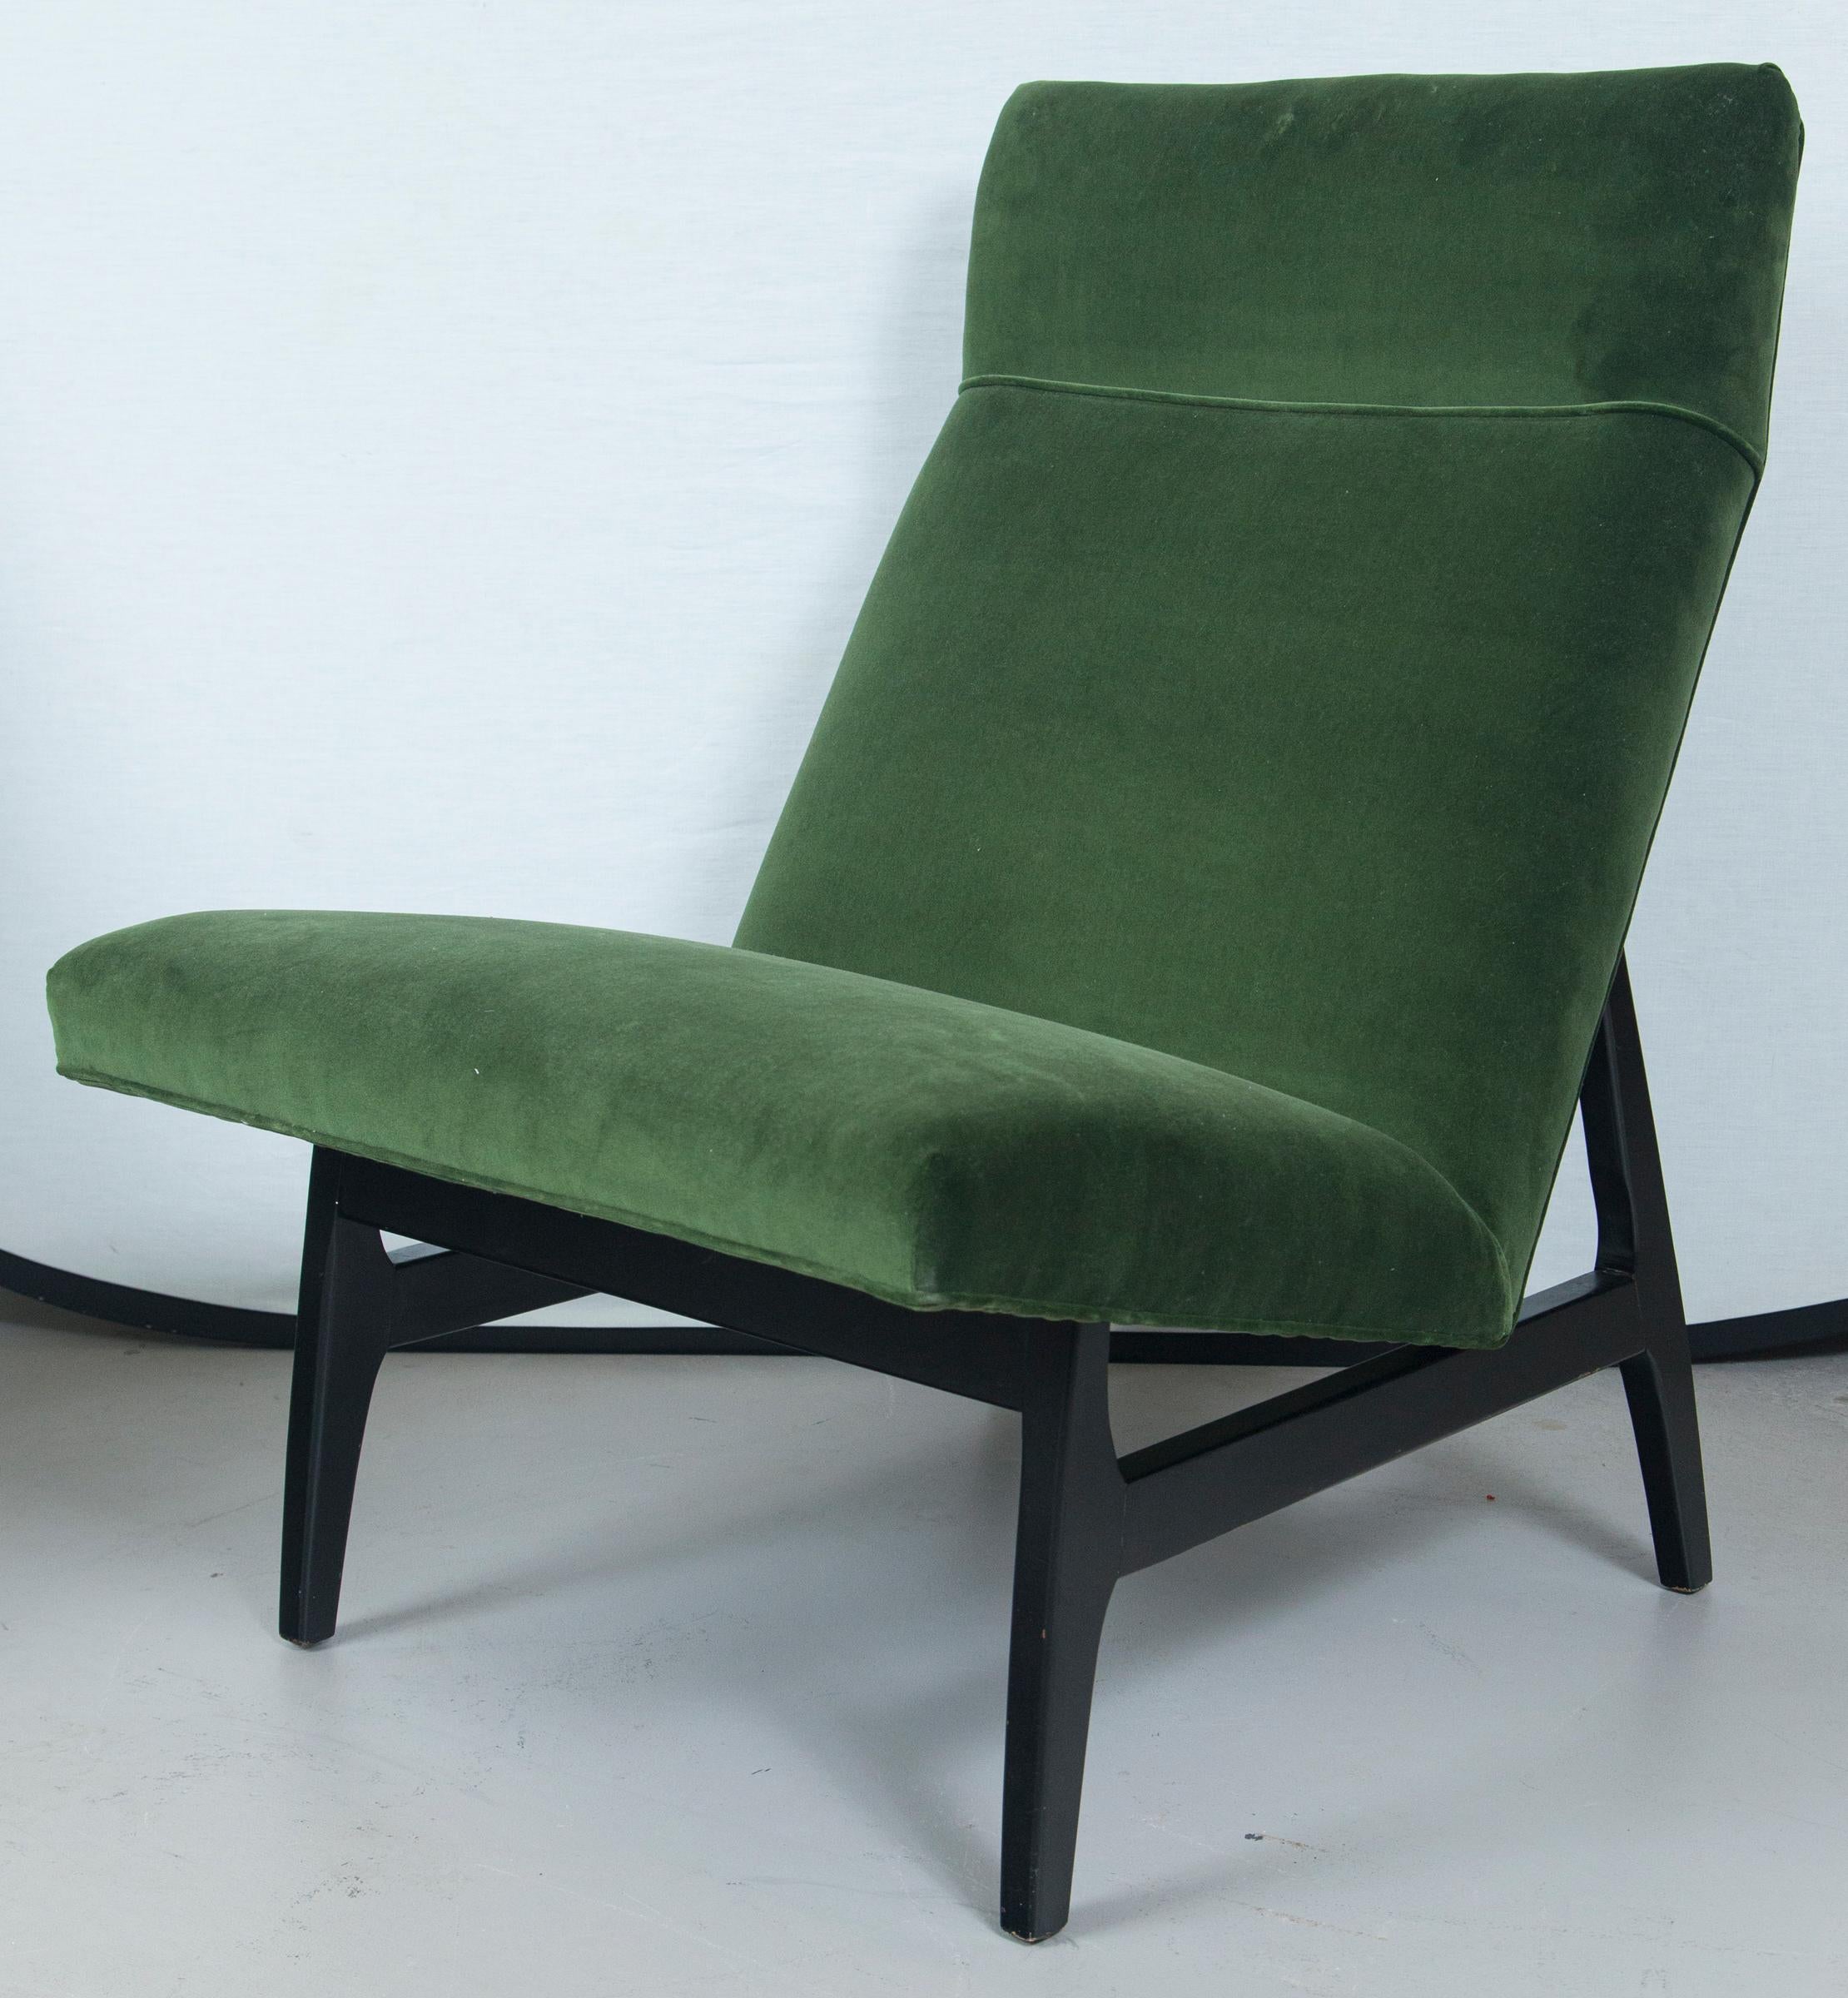 Mid-20th Century Green Velvet Jens Risom Slipper Chair